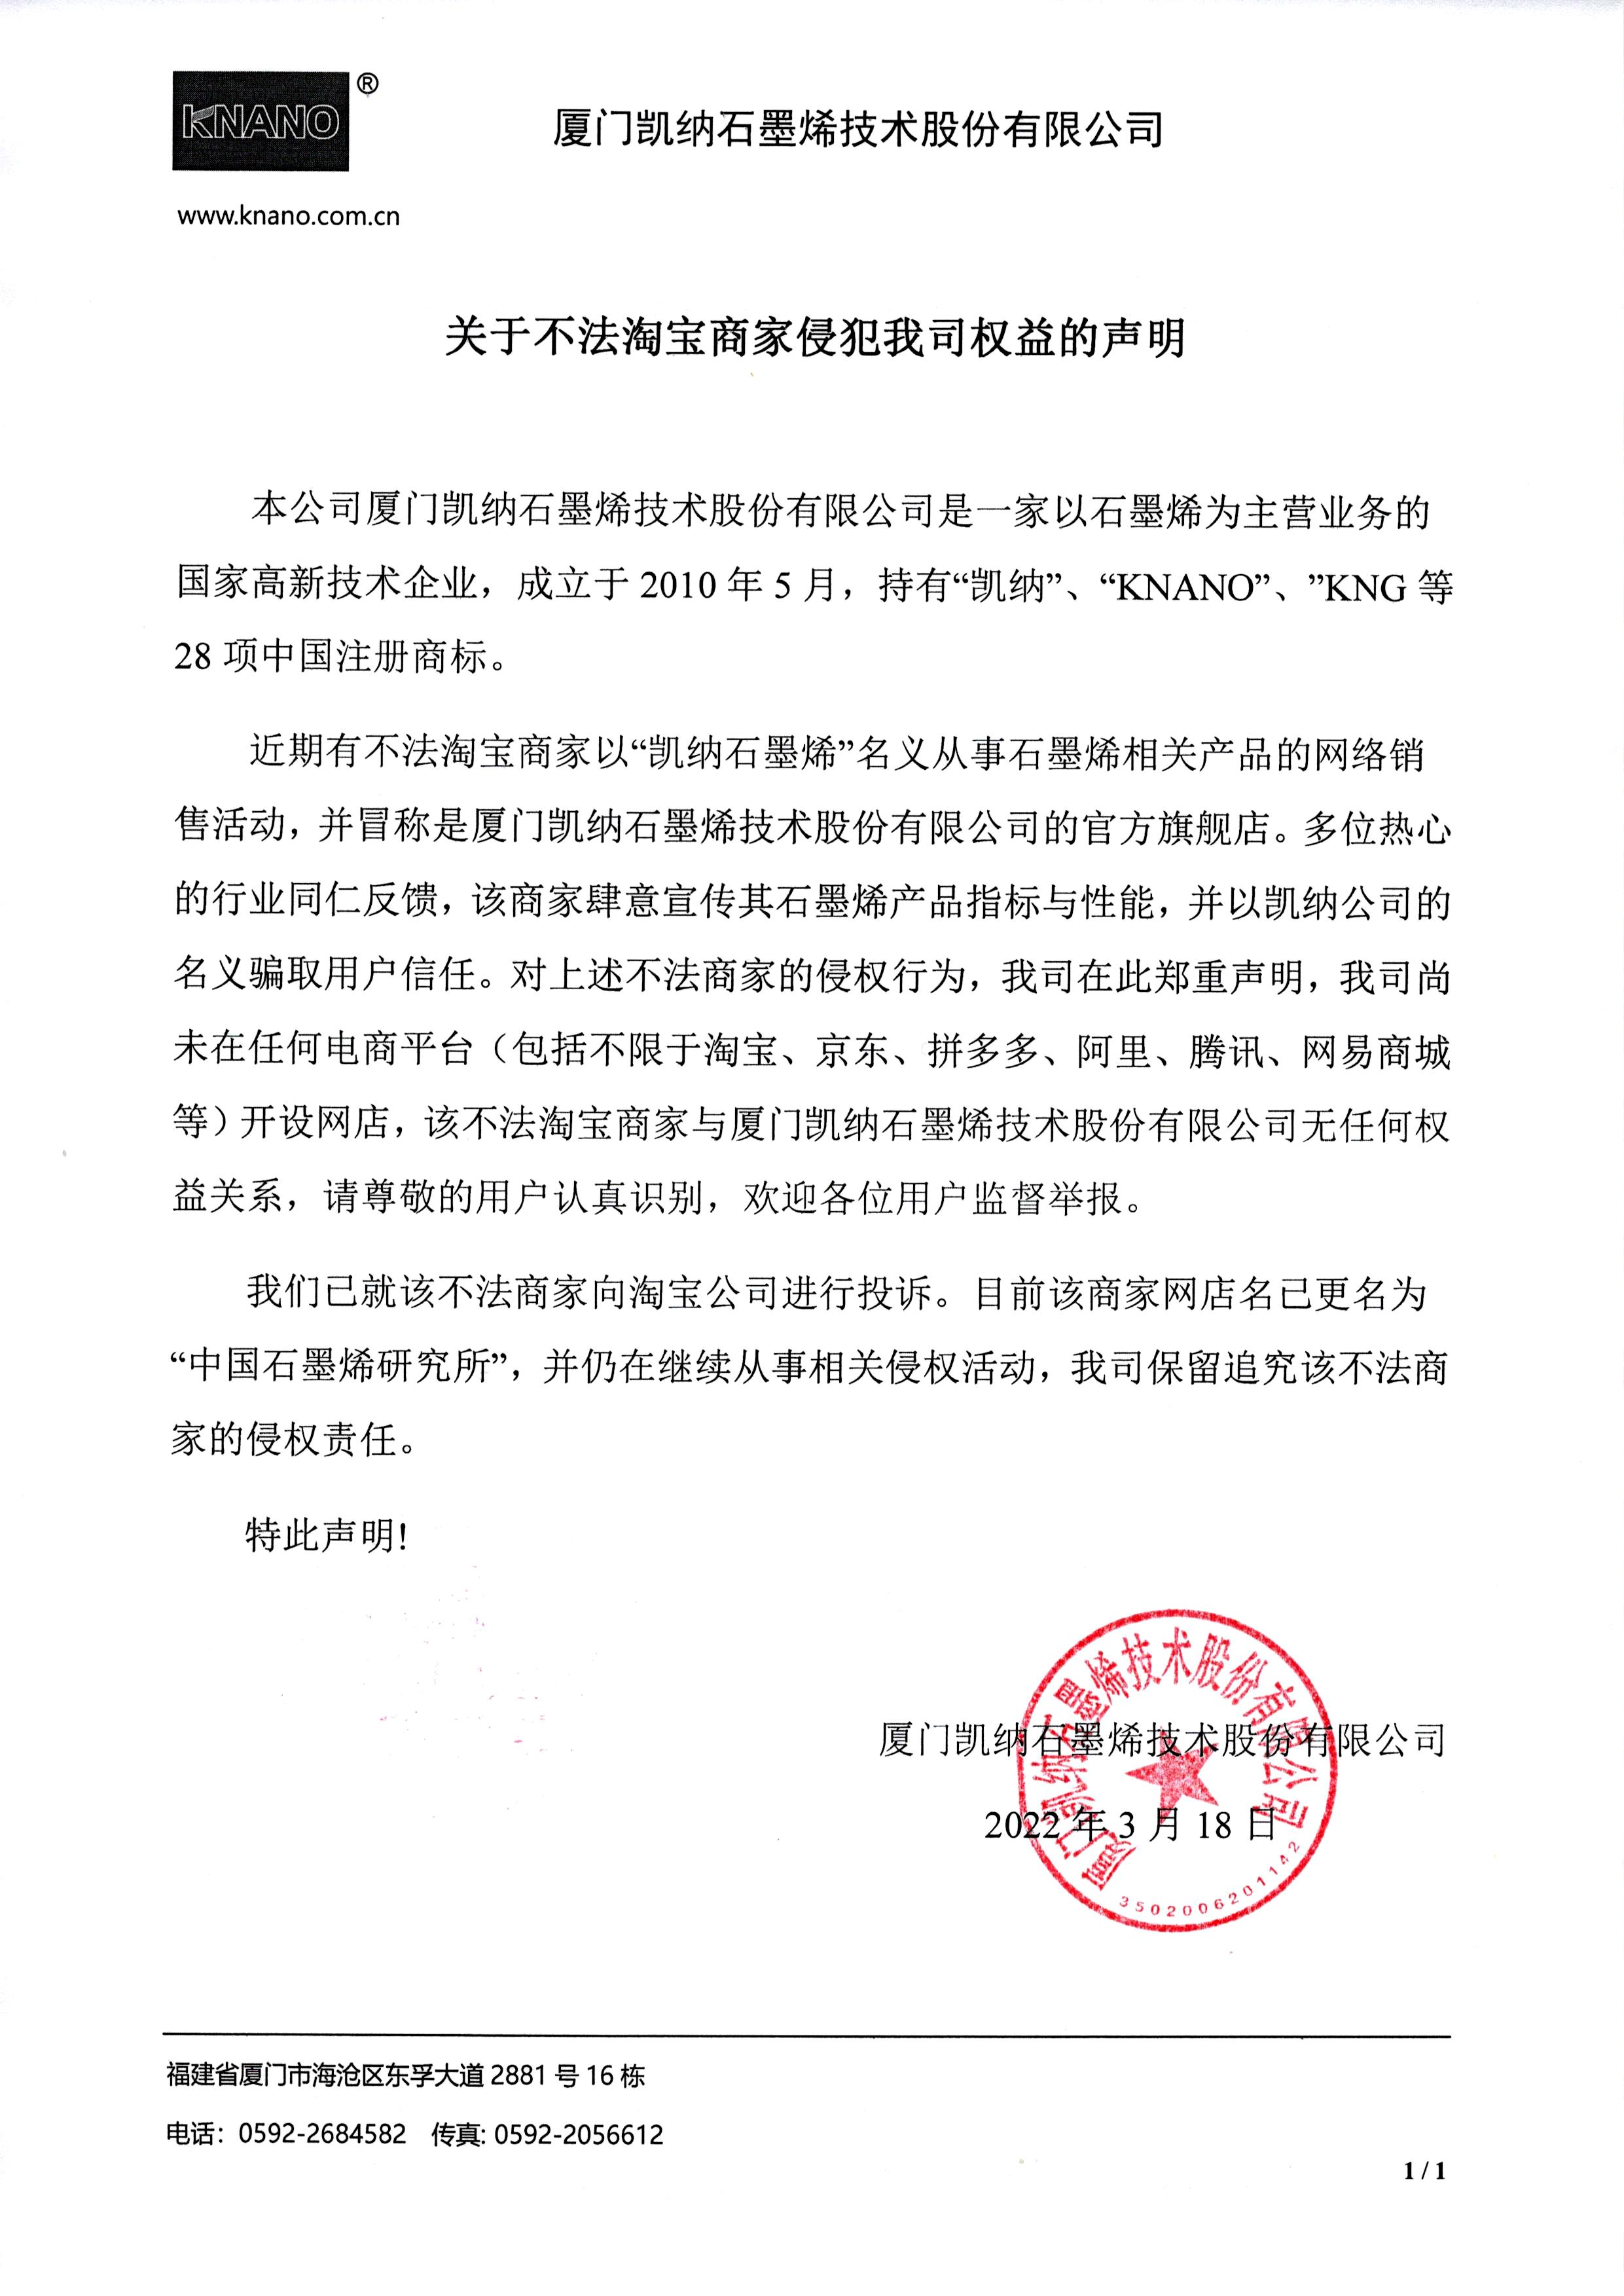 澳门8858cc永利(China)官网-Baidu百科严正声明！